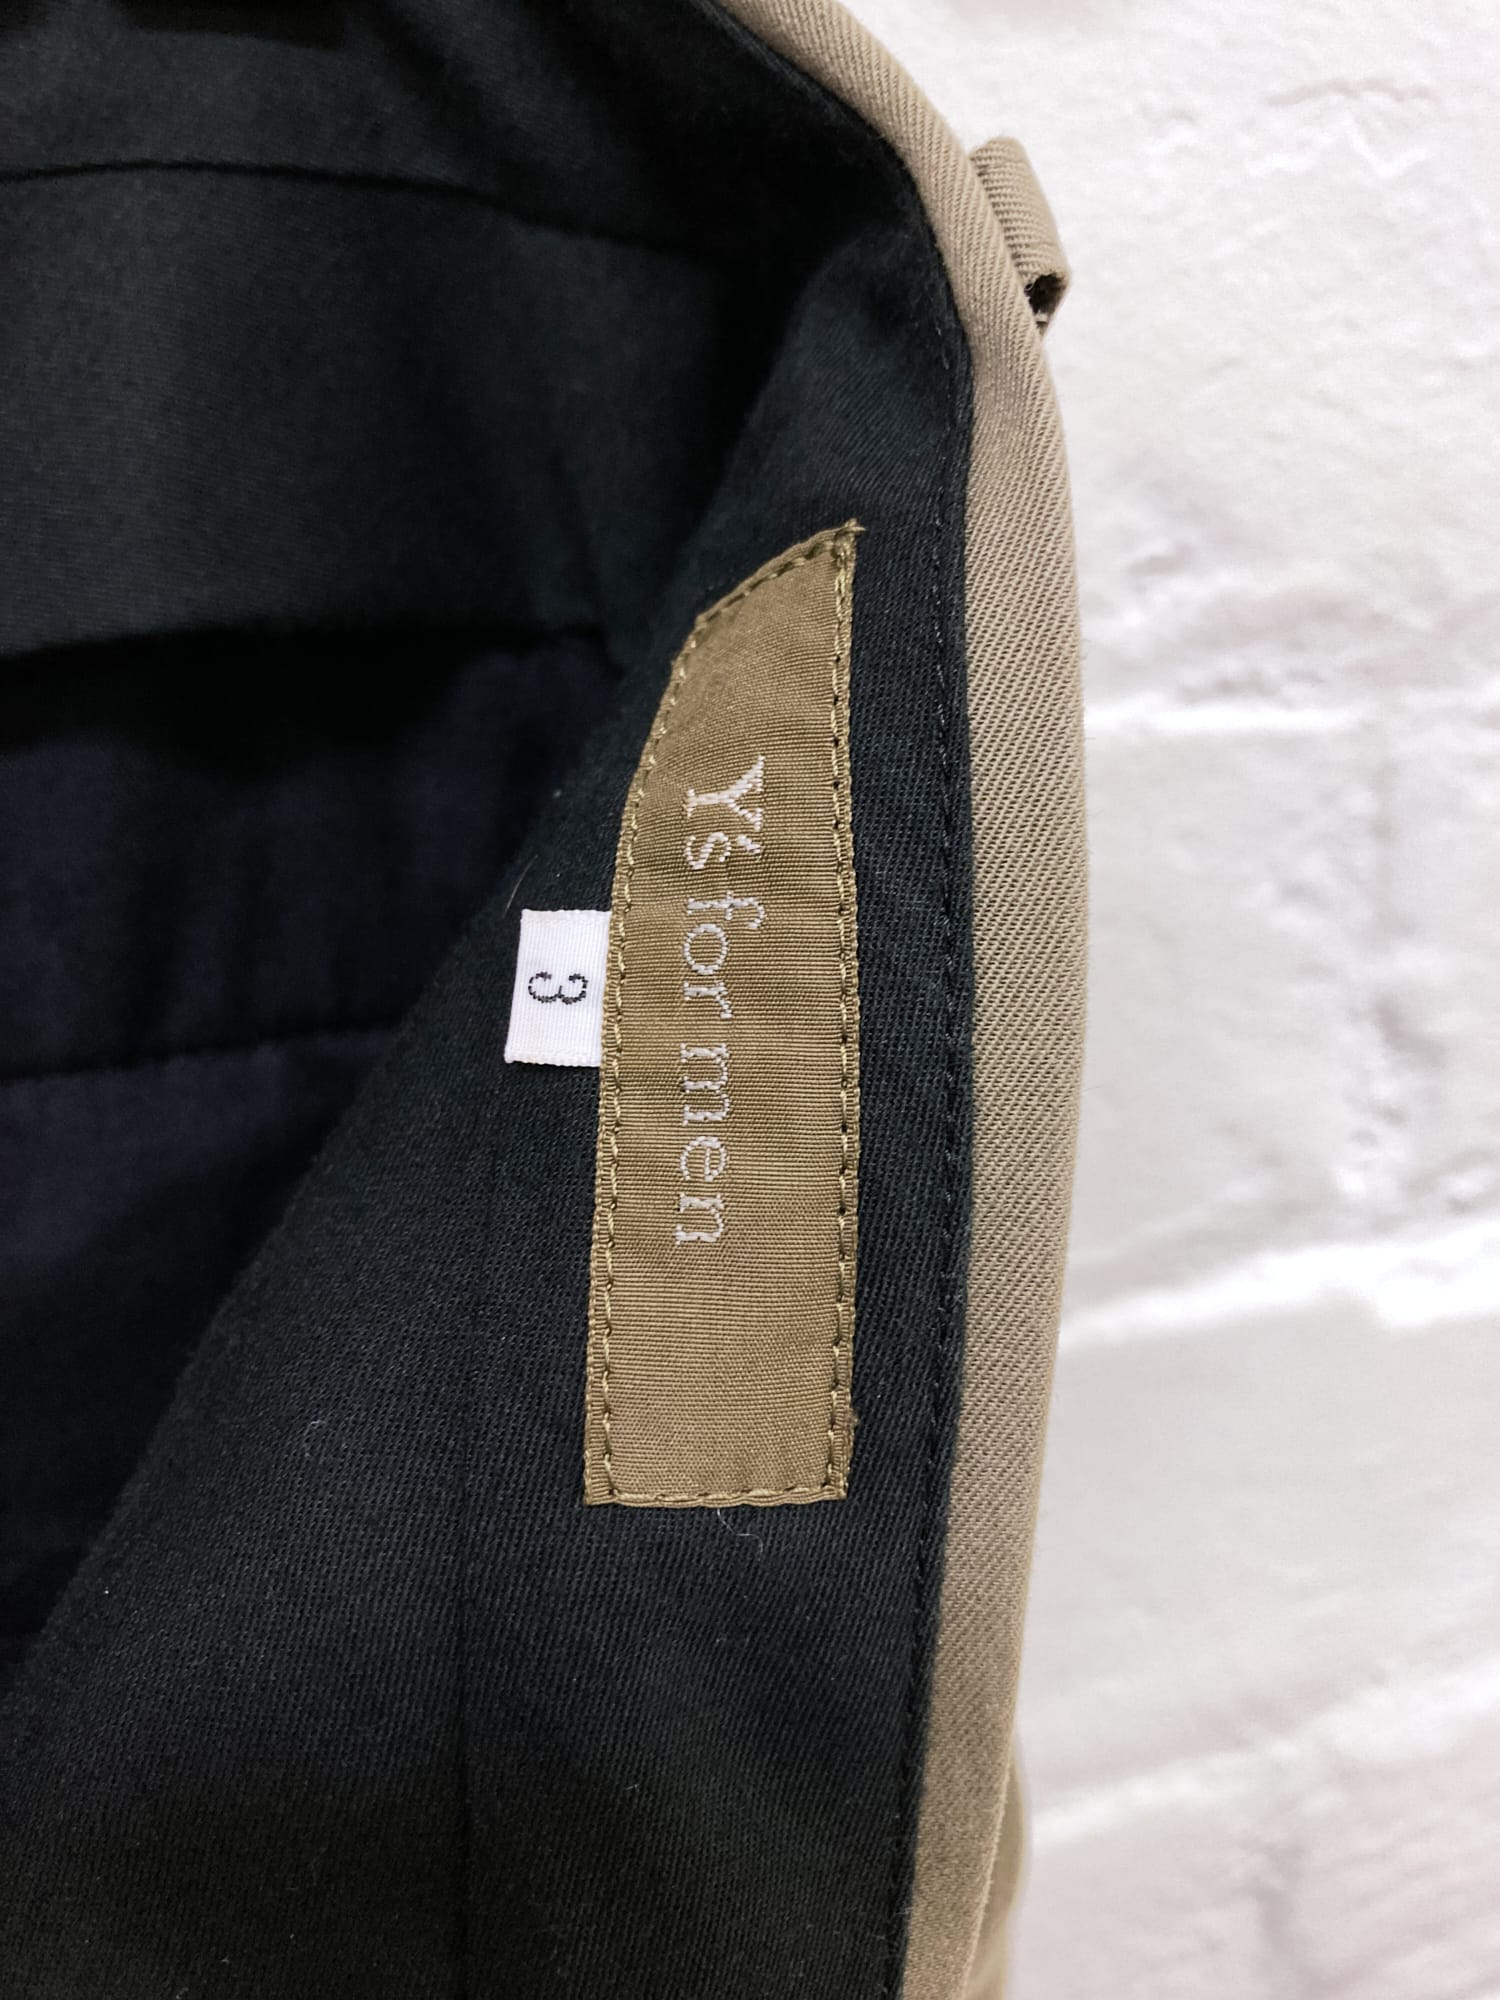 Y’s for Men Yohji Yamamoto khaki cotton straight leg trousers - size 3 M L